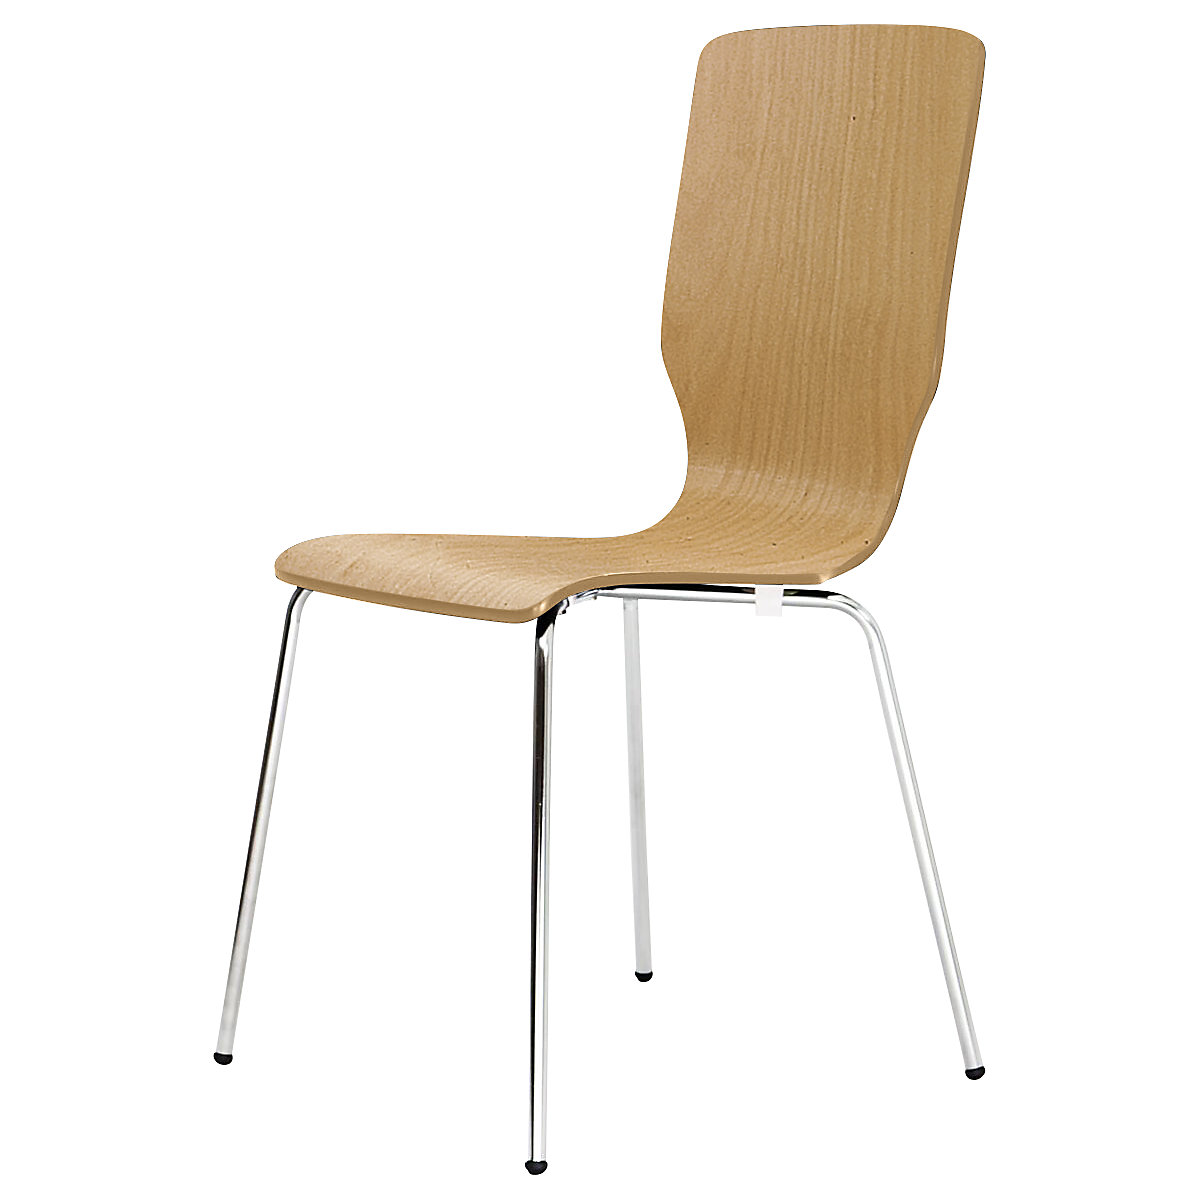 Dřevěná skořepinová židle, v x š x h 850 x 400 x 520 mm, bal.j. 4 ks, skořepina sedáku přírodní buk